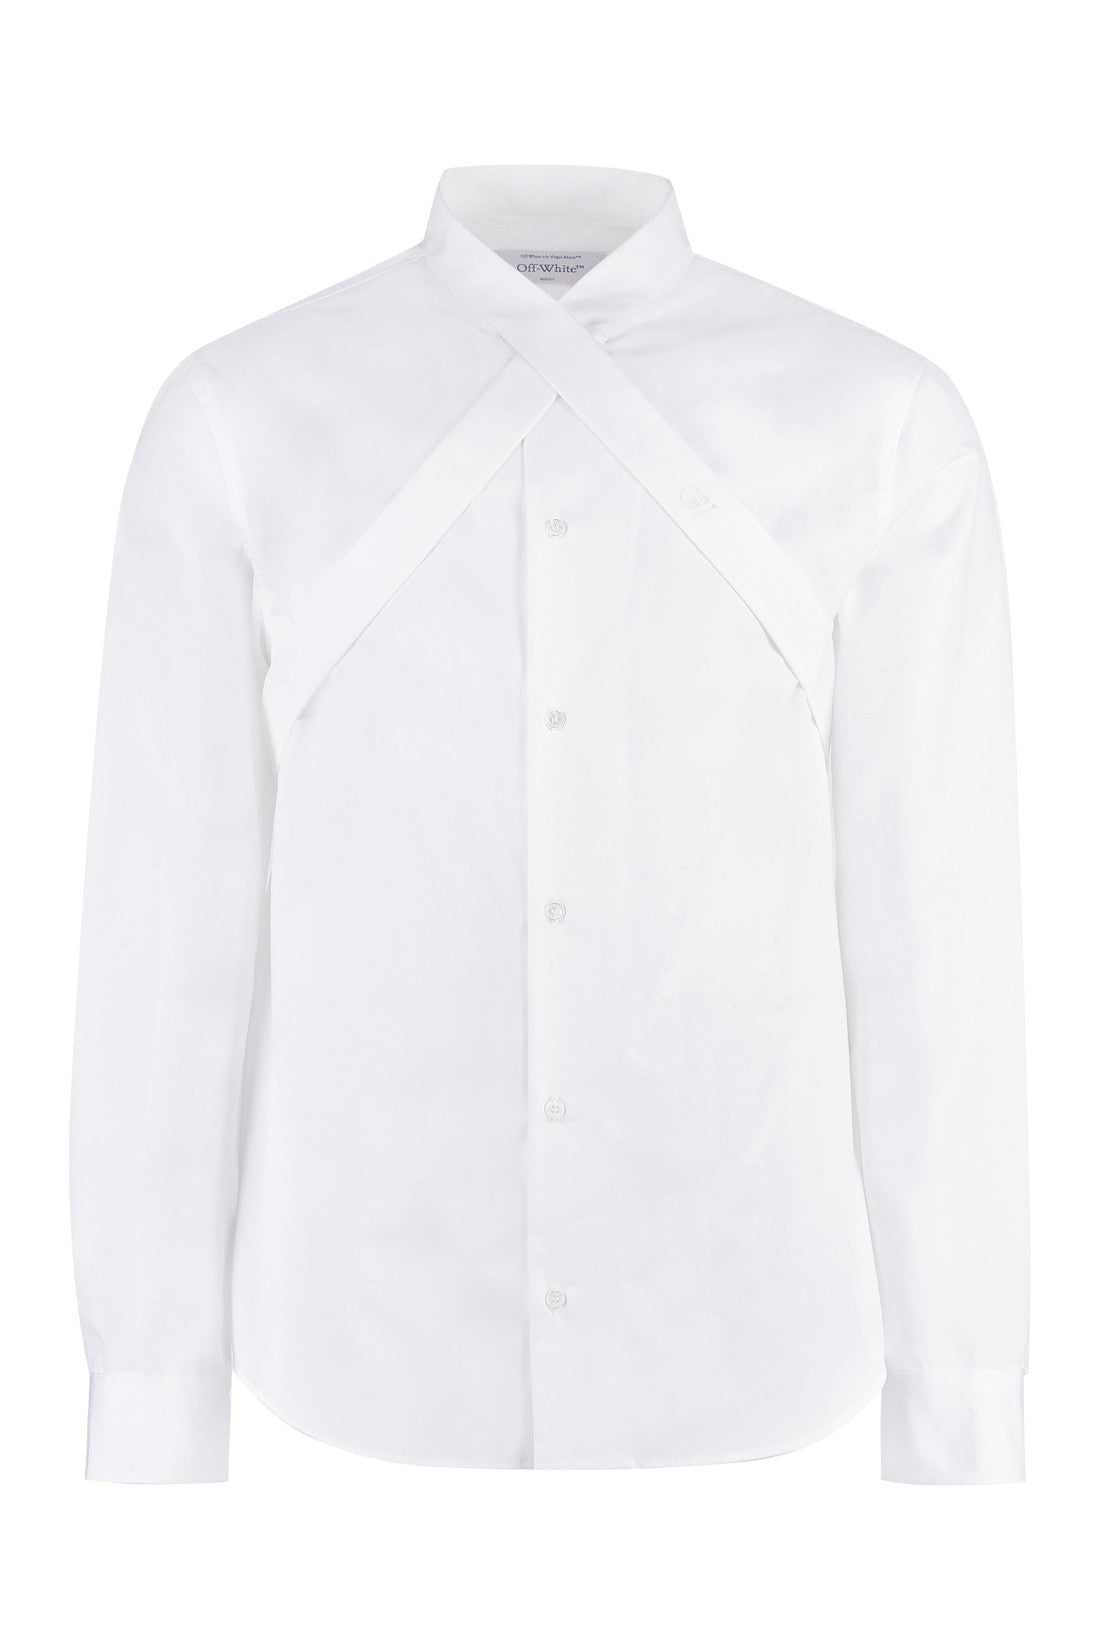 Off-White-OUTLET-SALE-Cotton shirt-ARCHIVIST